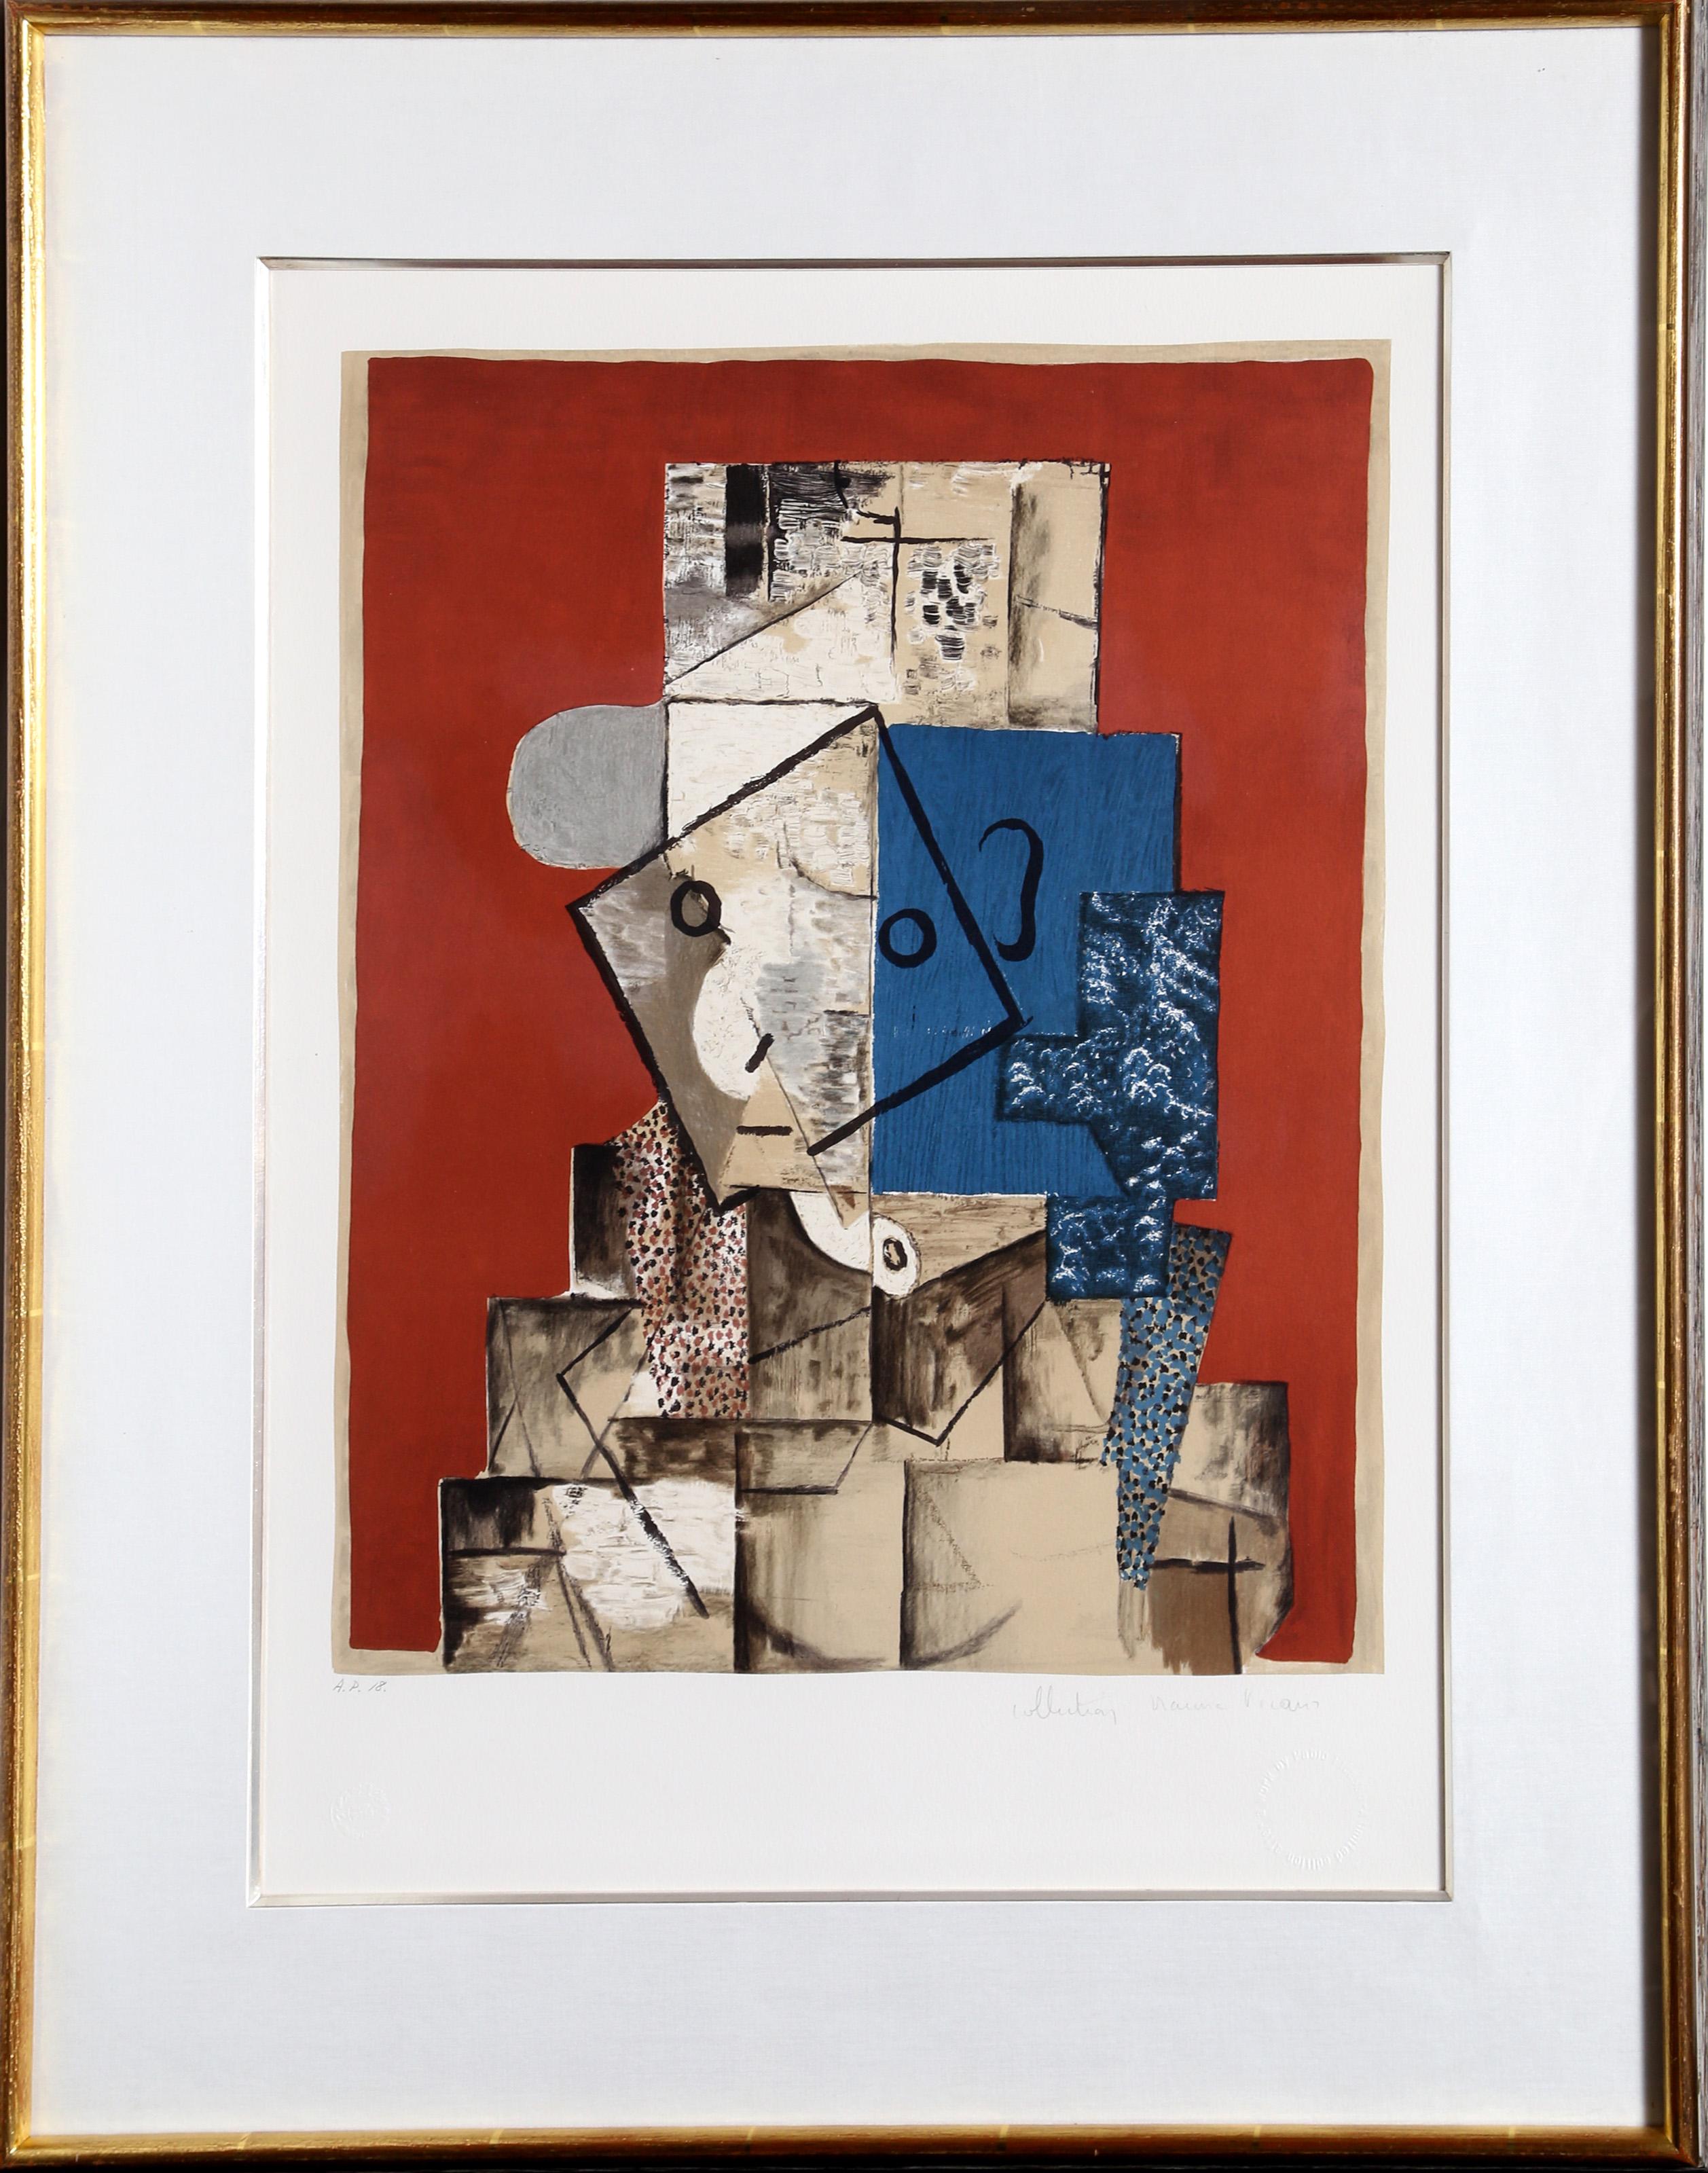 Une lithographie de la Collection S de Marina Picasso d'après le tableau de Pablo Picasso "Visage sur Fond Rouge".  La peinture originale a été achevée en 1914. Dans les années 1970, après la mort de Picasso, Marina Picasso, sa petite-fille, a